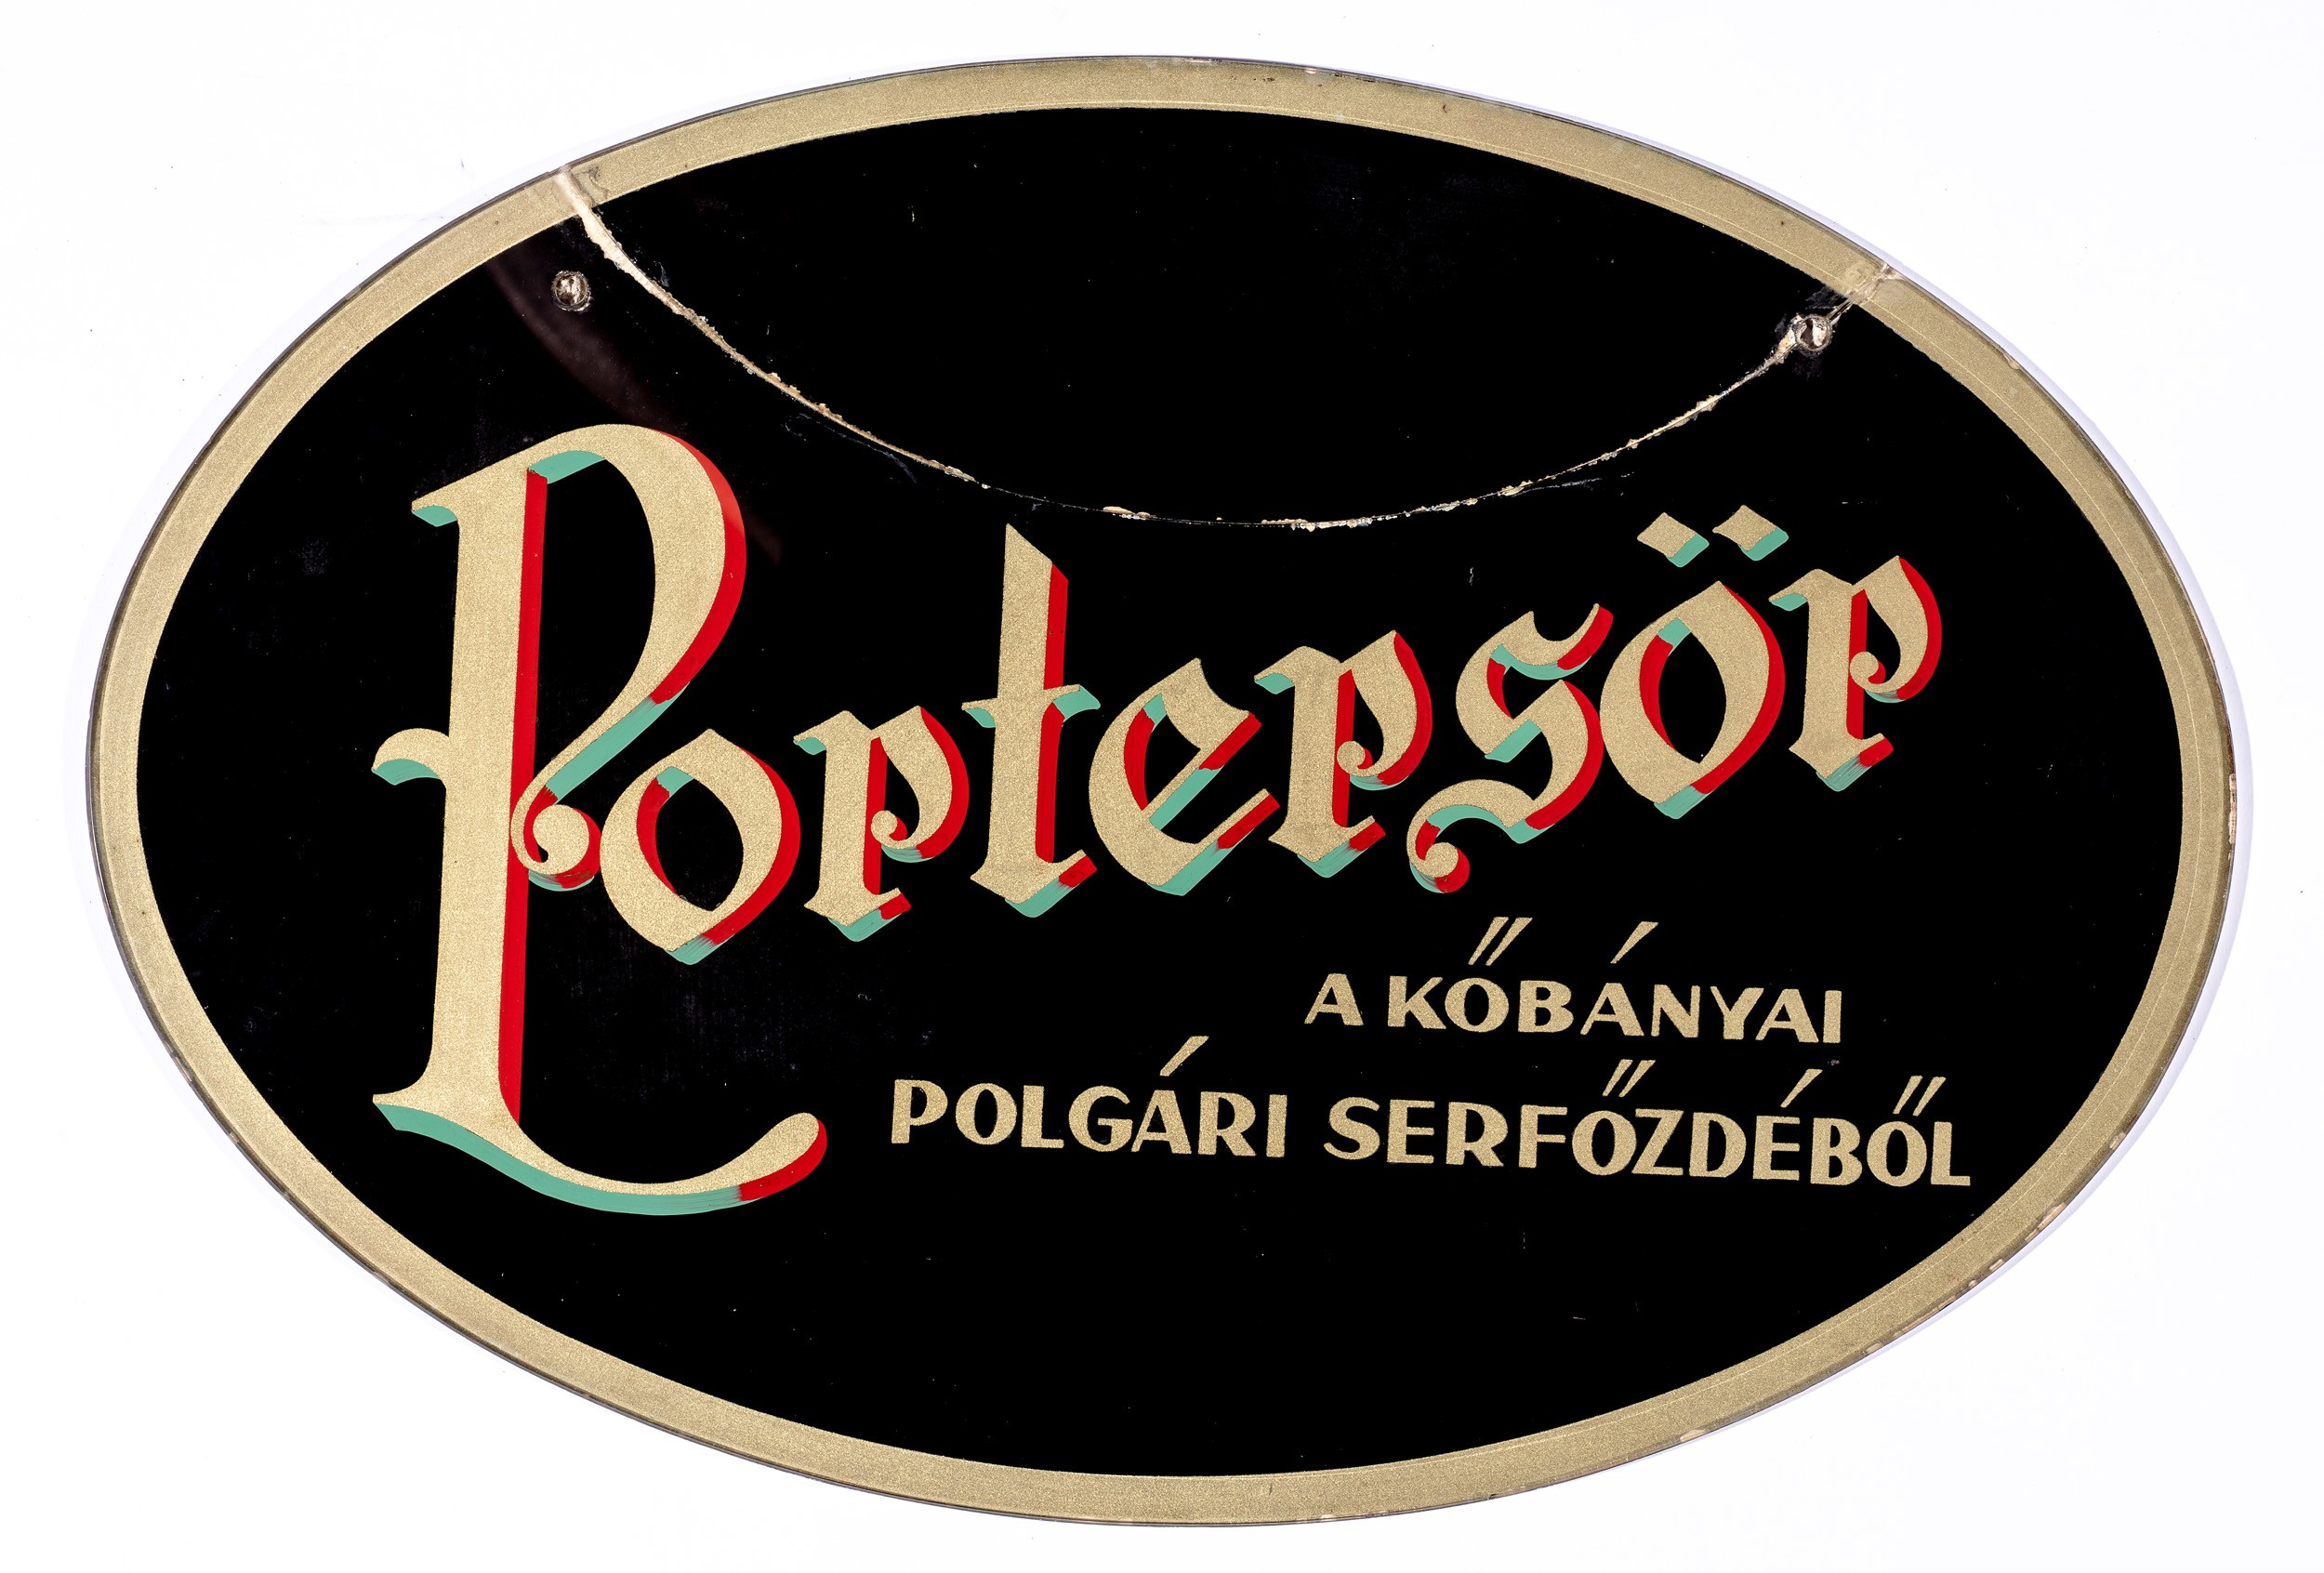 Porter sör,köb.Polgári Serf.,üveg fest (Söripari Emléktár - Dreher Sörmúzeum CC BY-NC-SA)